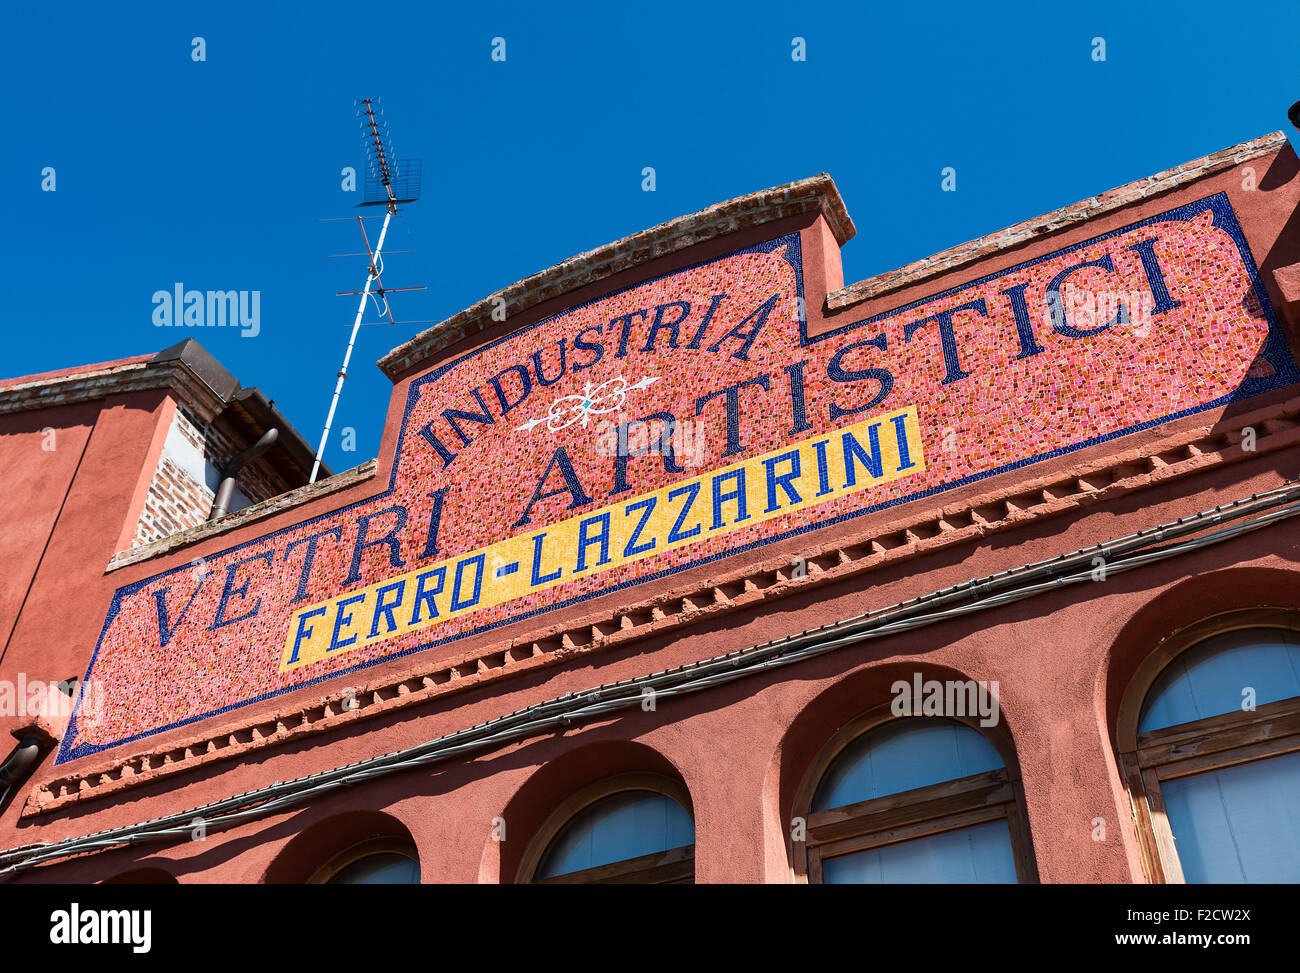 L'île vénitienne de Murano, Italie. Célèbre pour ses nombreux fours et fabriqué à la main en verre. Banque D'Images